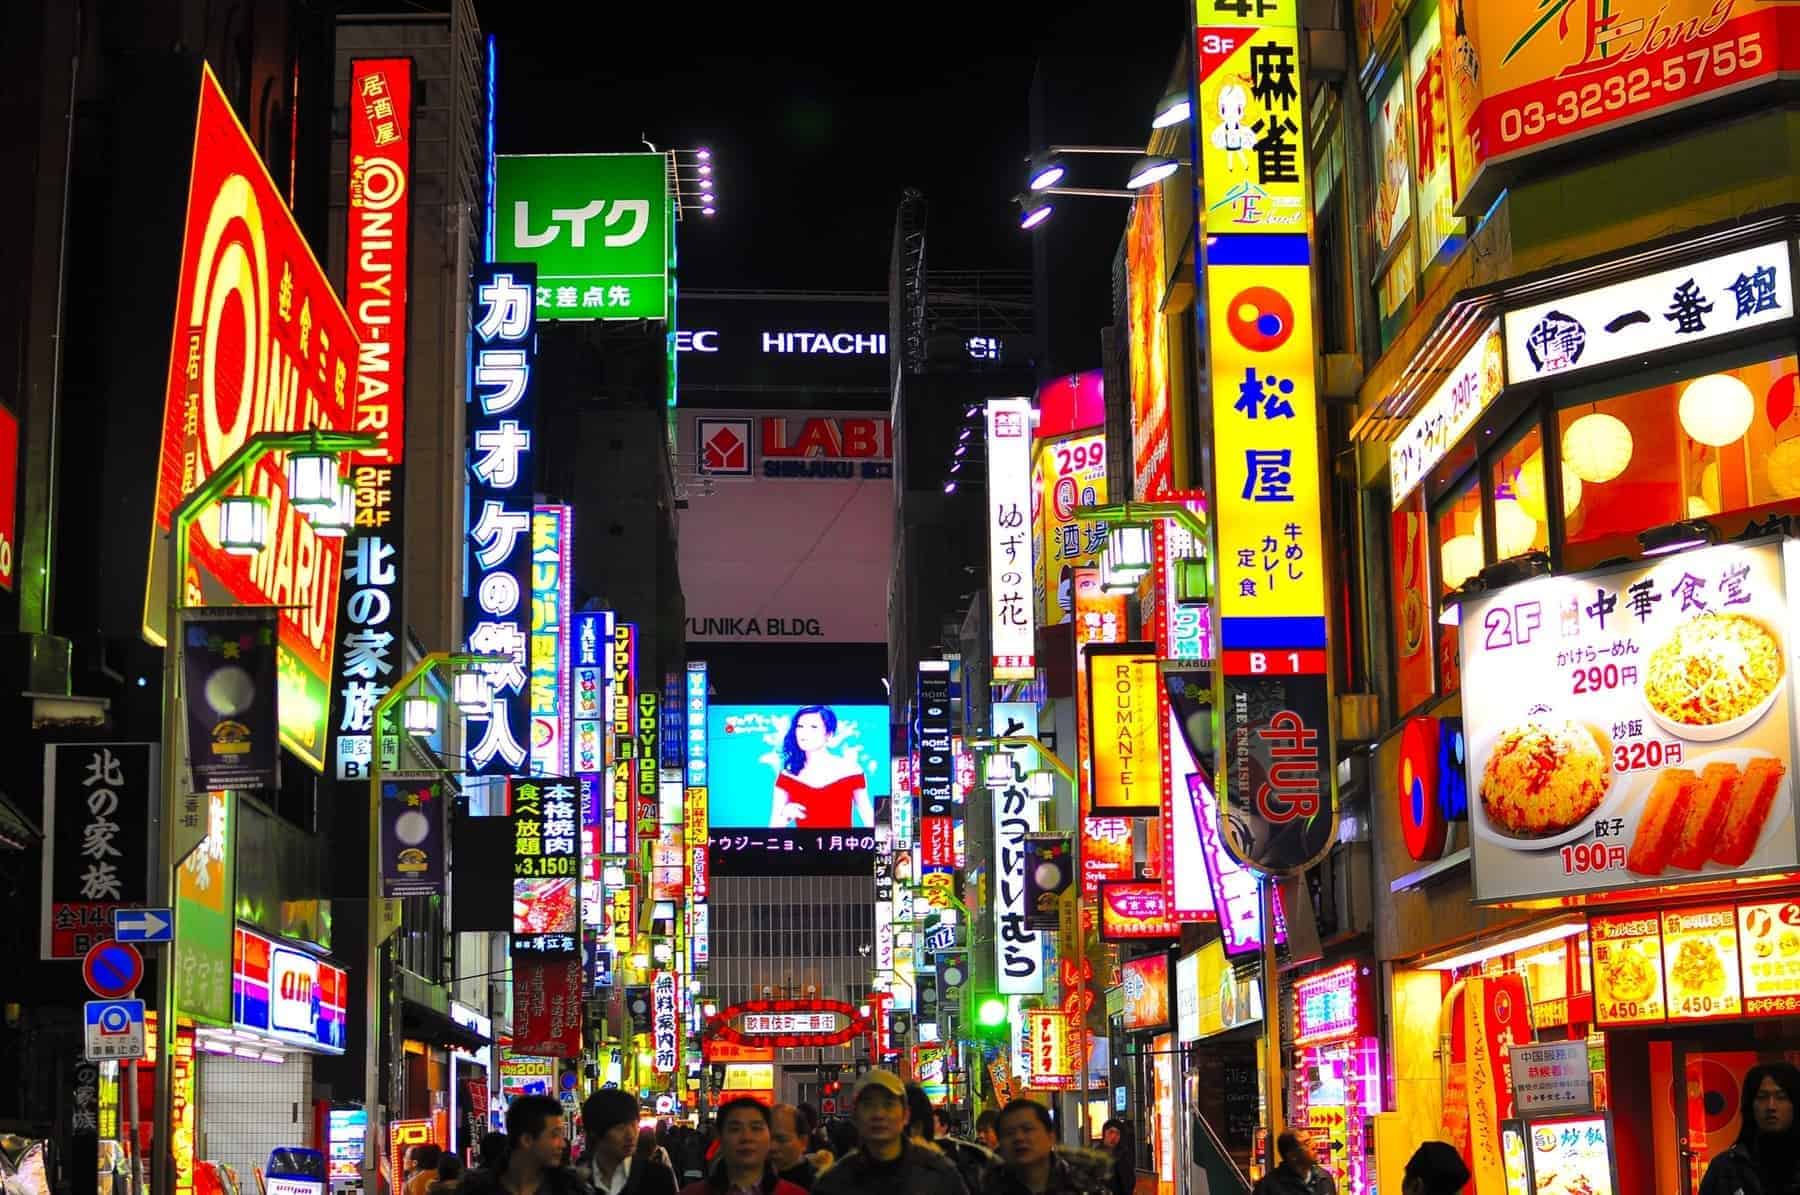 Neonlys, der vil noget i Kabukicho, Shinjuku. The Tokyo redlight district. Future Japan er også super interessant